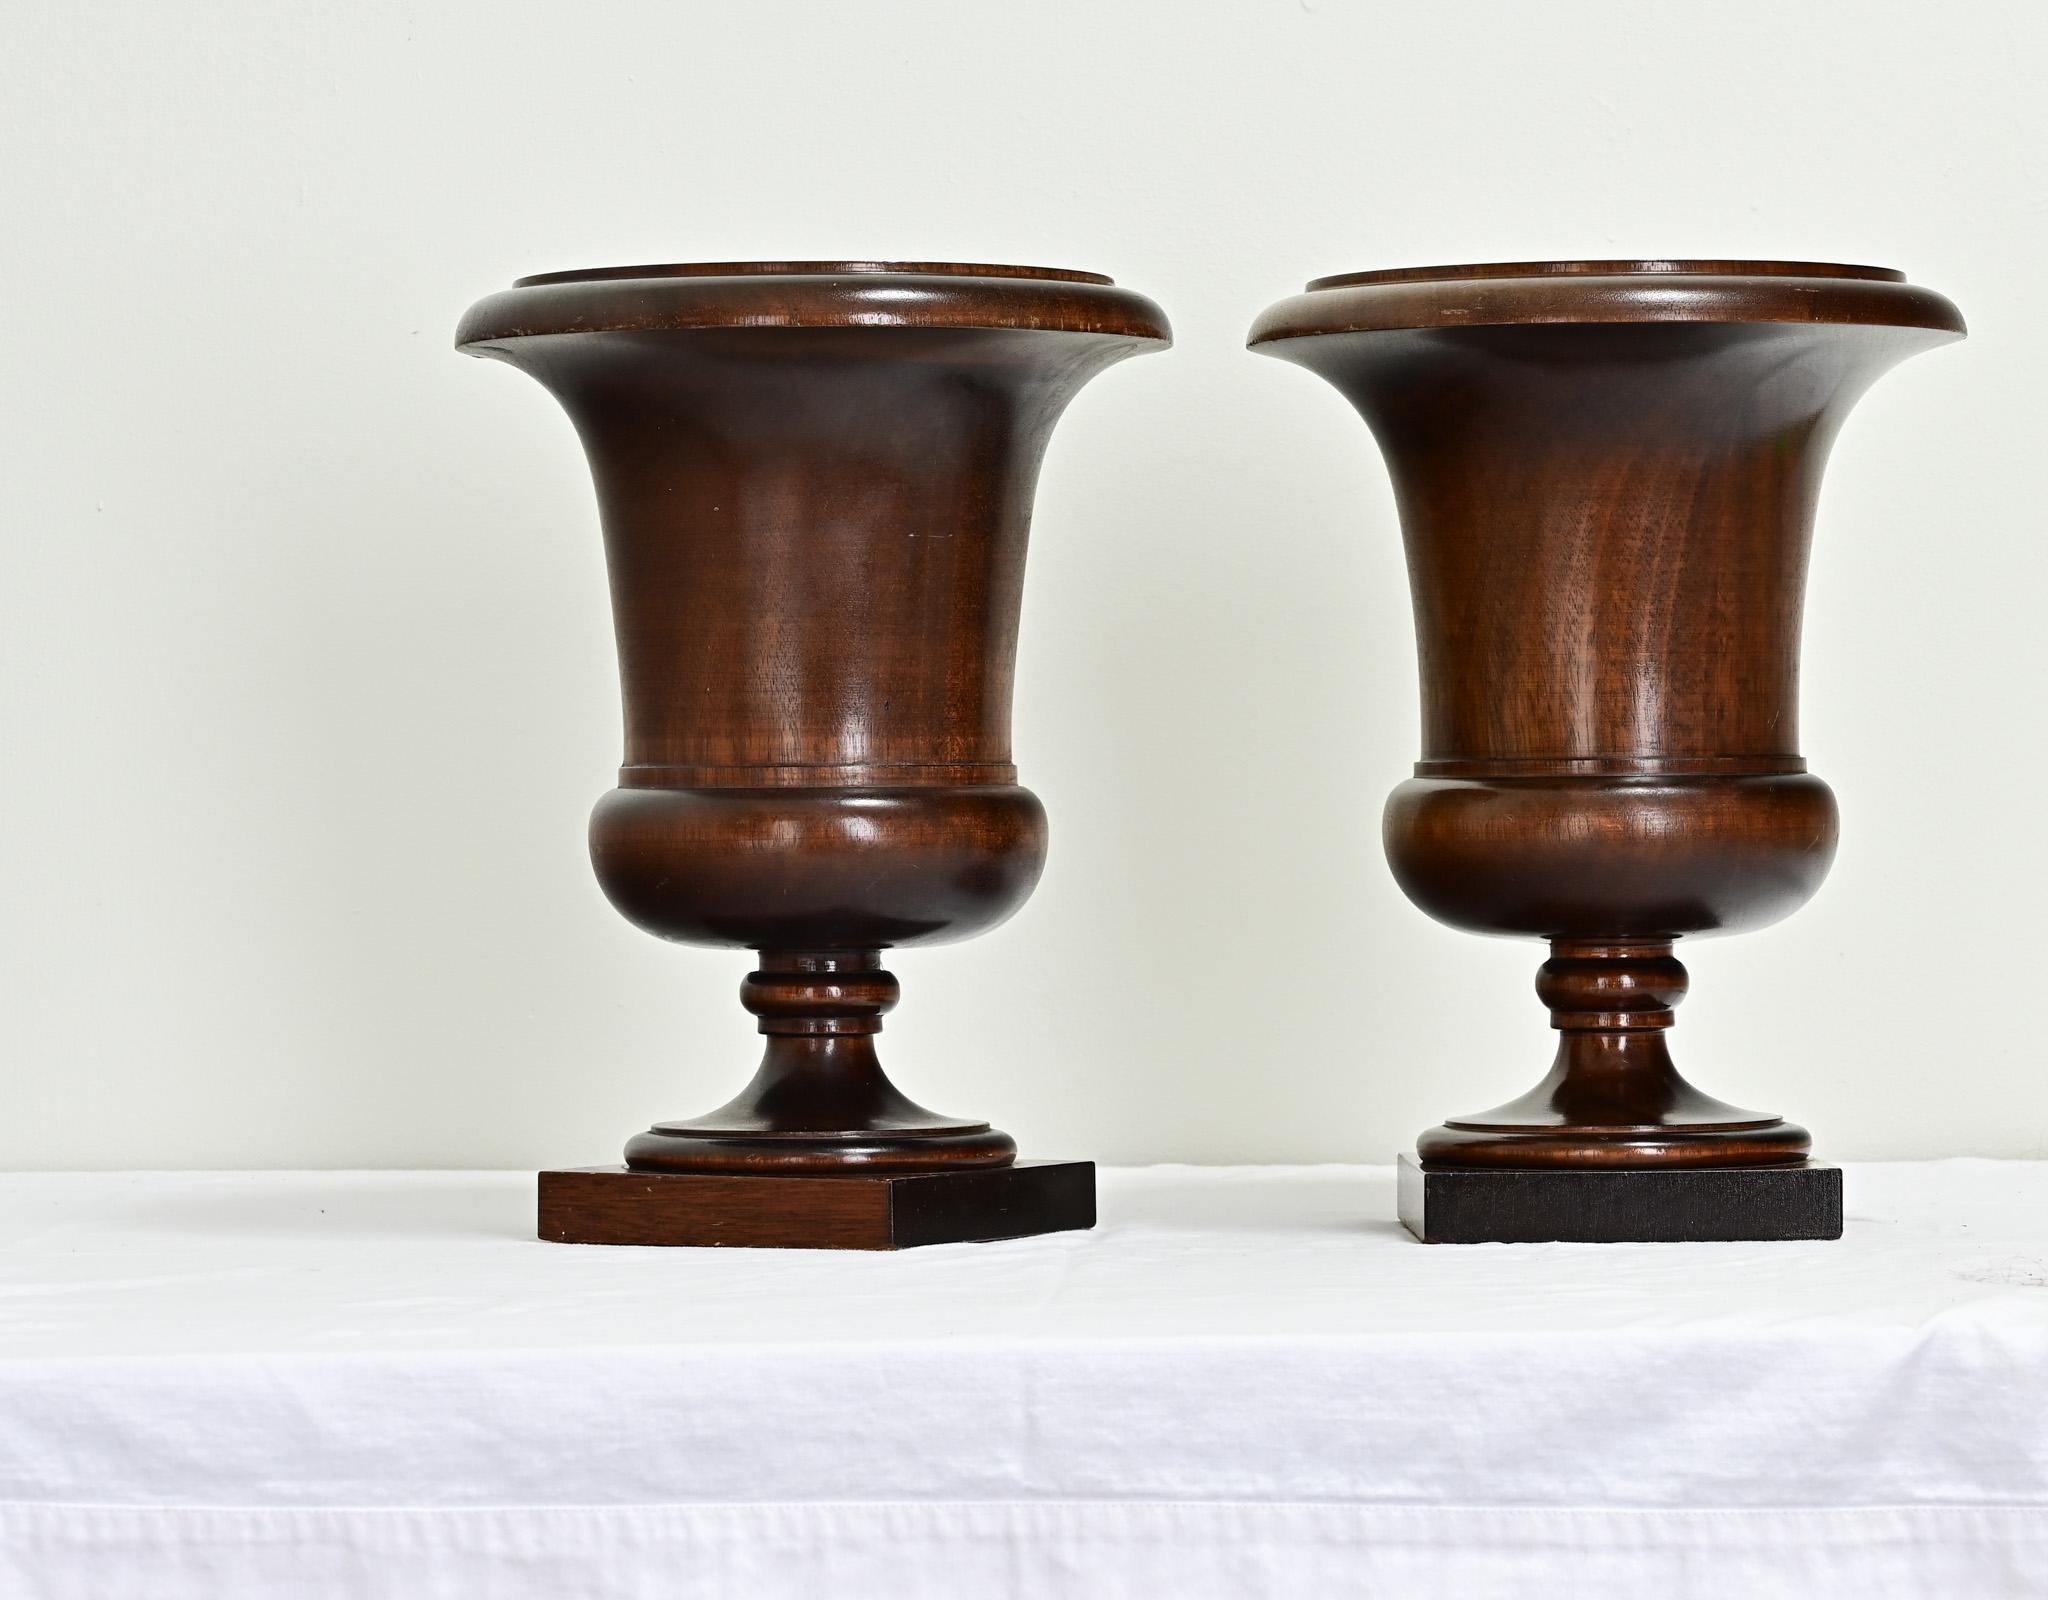 Ein beeindruckendes Paar Nussbaum-Urnen aus dem England des 19. Jahrhunderts. Diese Urnen wurden fachmännisch auf einer Drehbank gedreht, um das Becken und den Sockel herzustellen, die auf quadratischen Mahagonisockeln enden. Gereinigt und mit einer